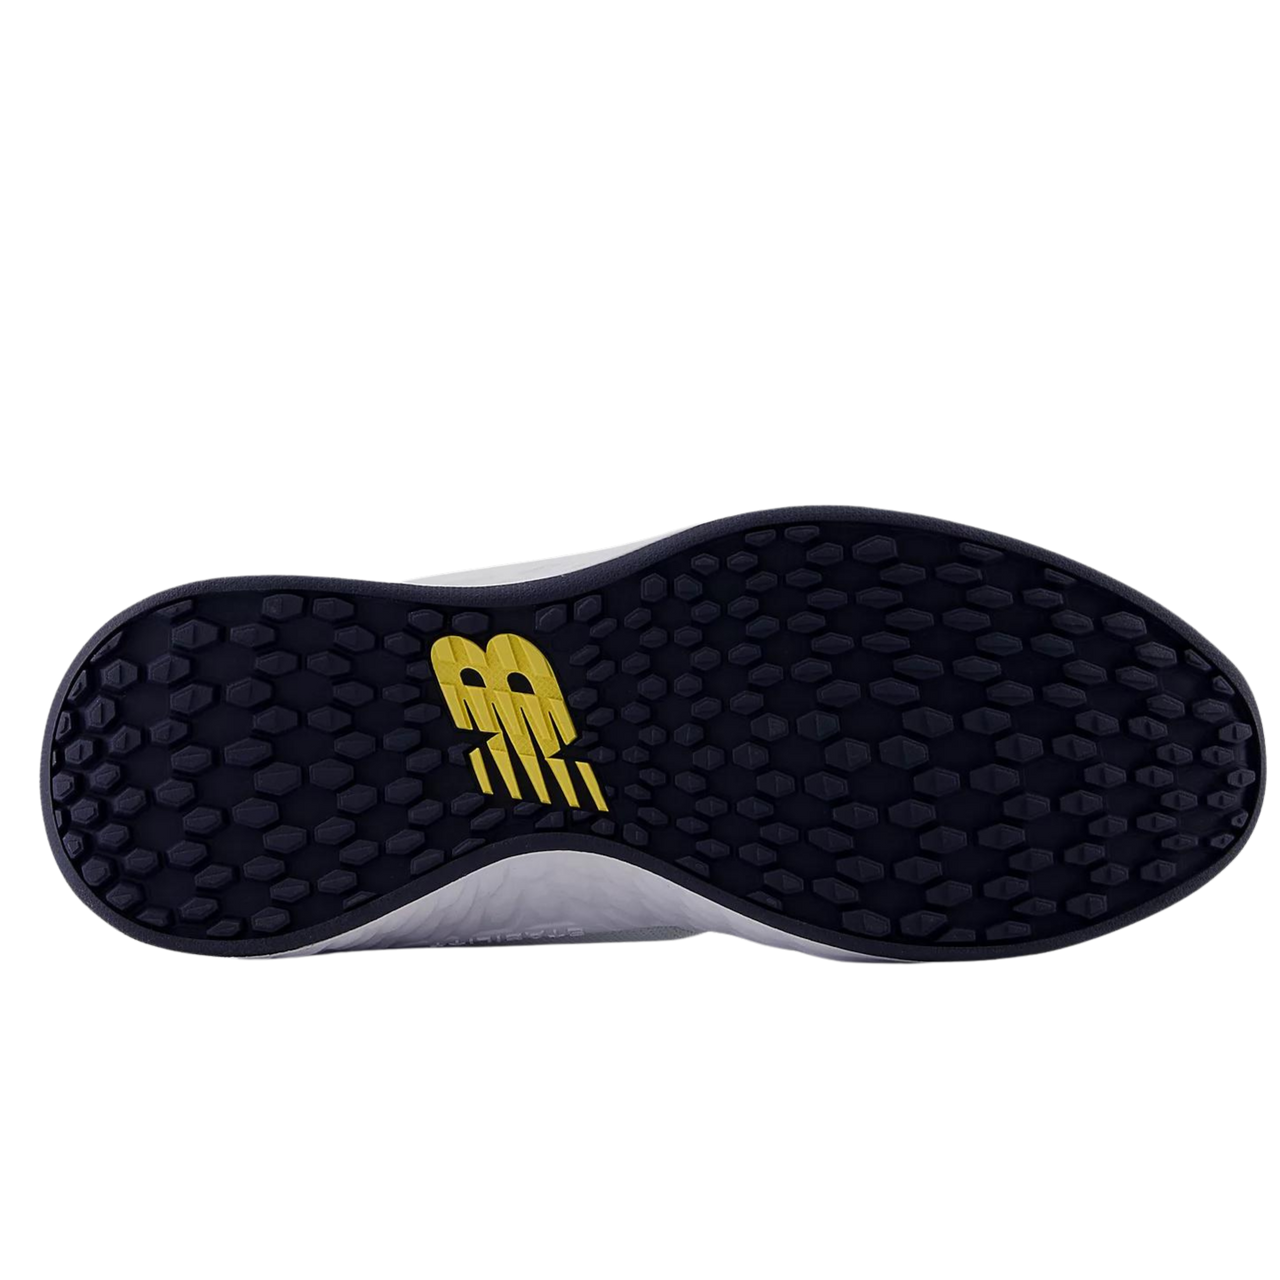 New Balance Fresh Foam ROAV Men's Spikeless Golf Shoes